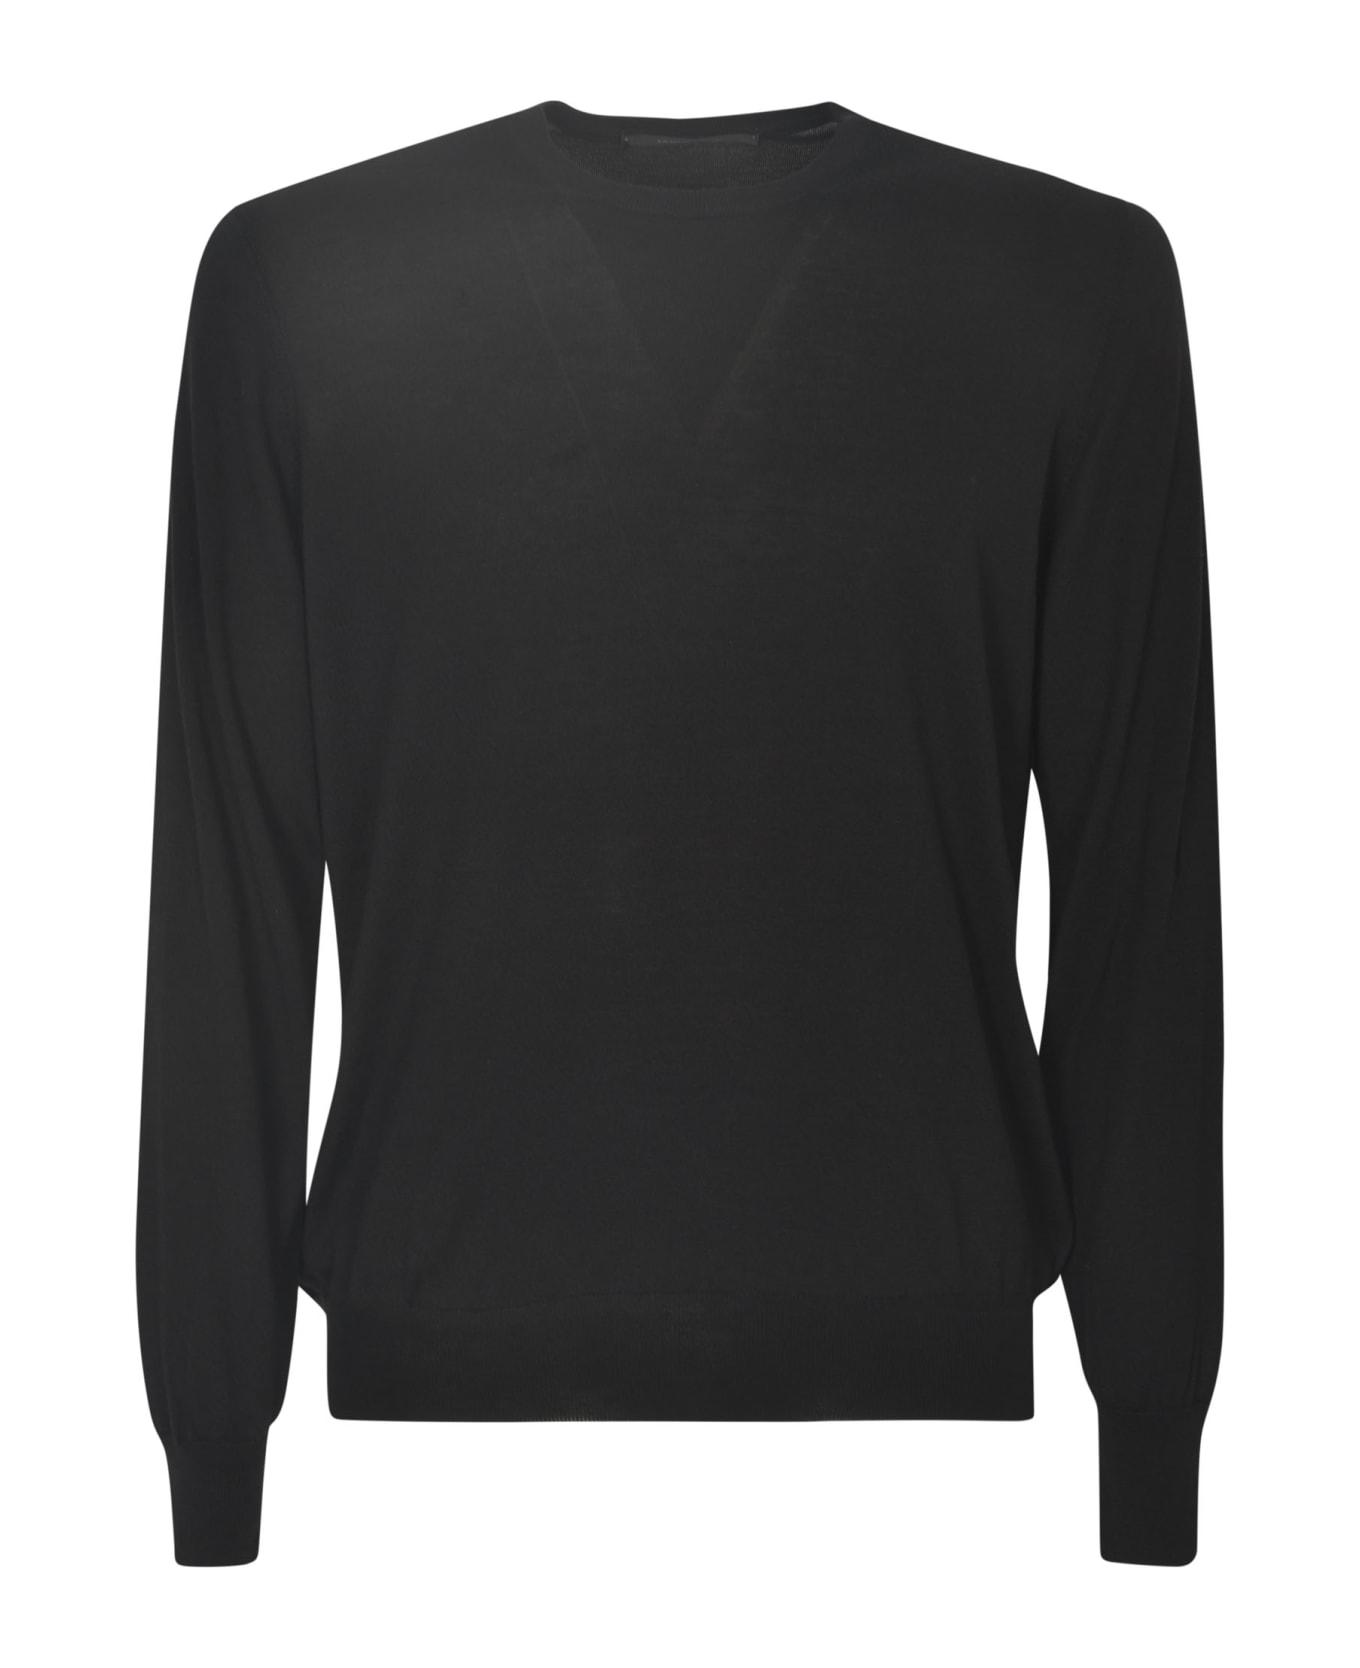 Tagliatore Gray Sweater - Black ニットウェア